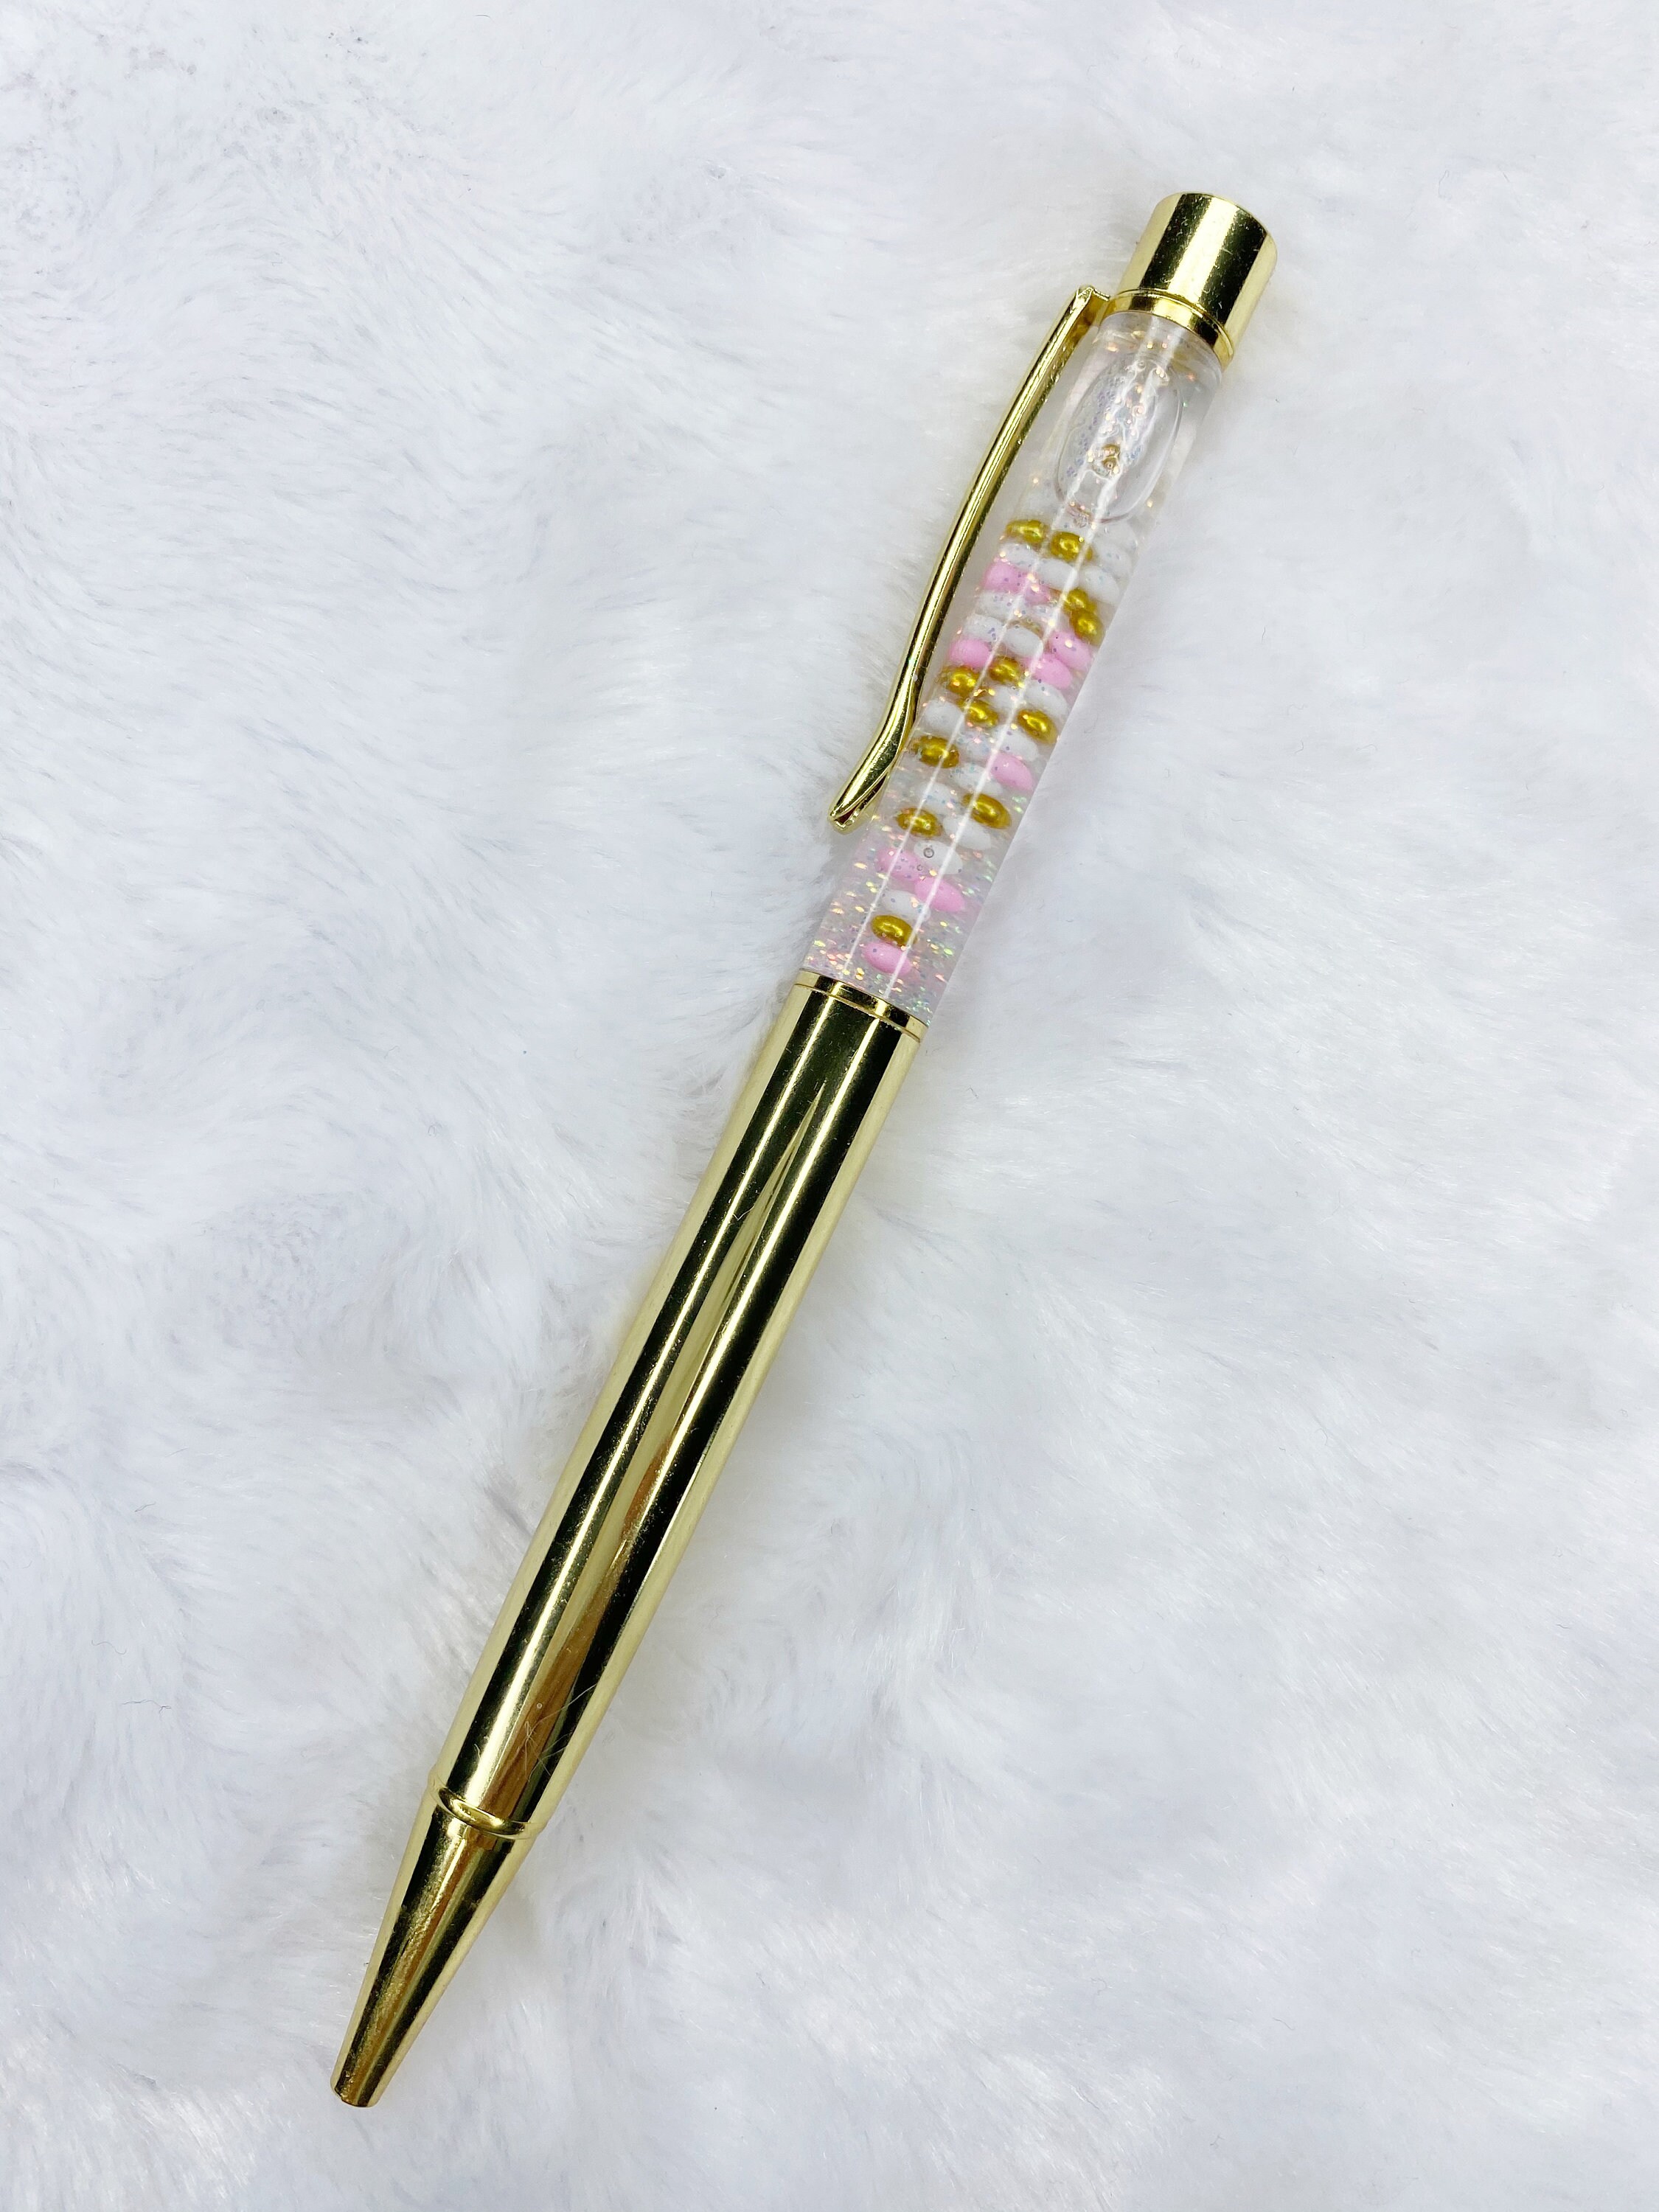 Rose Gold Glitter Pen, Coloured Glitter Pen, Luxury Pen, Gift for